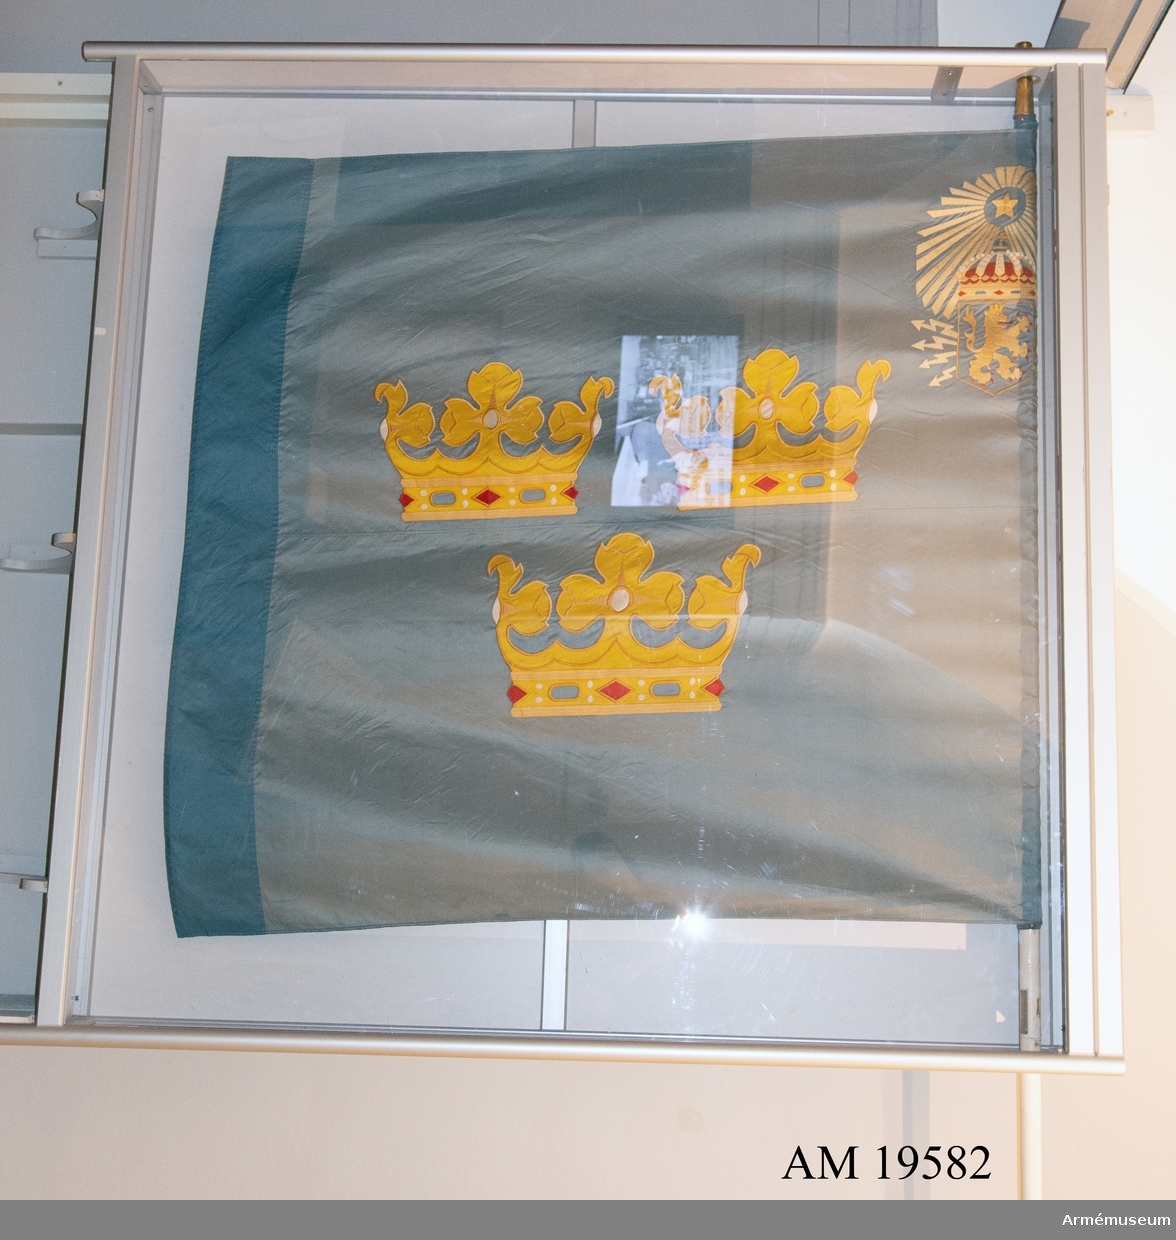 Fanans mittmotiv består av tre öppna kronor. I övre inre hörnet finns  en stjärna i strålglans och under den ett lejon i sköld med strålknippe. Motiven är handbroderade. Duken är mycket skör och blekt.  På stången finns en sliverplatta monterad med texten: "Ur konung Gustav VI Adolfs hand i Karlsborg 19620625".